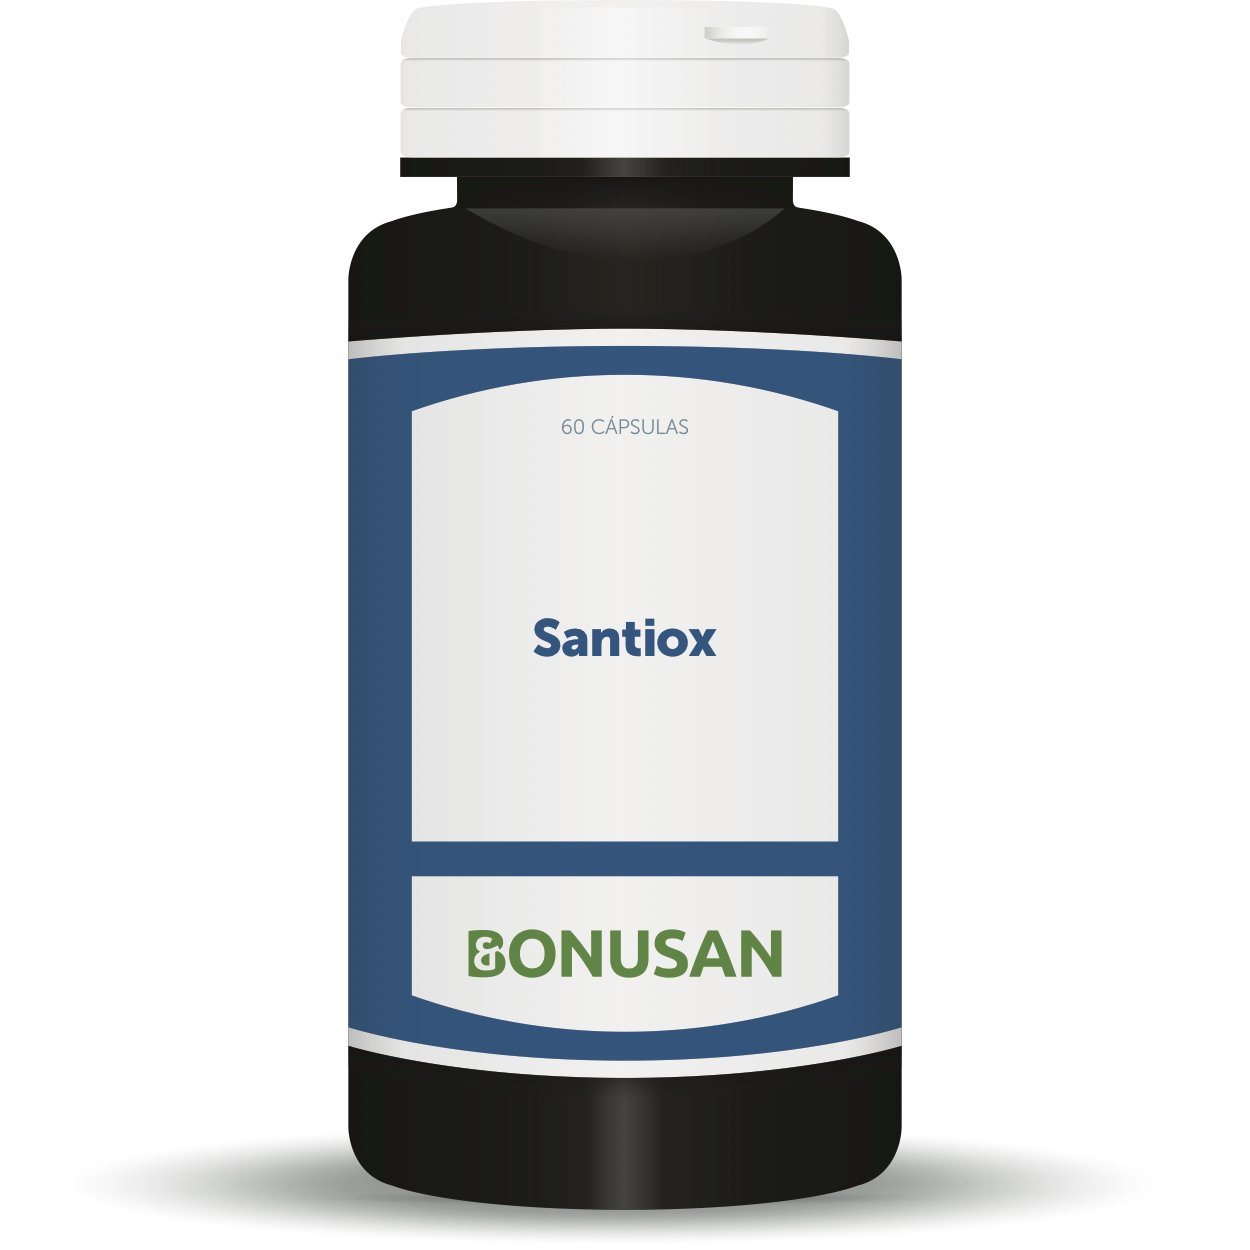 Santiox 60 Capsulas | Bonusan - Dietetica Ferrer